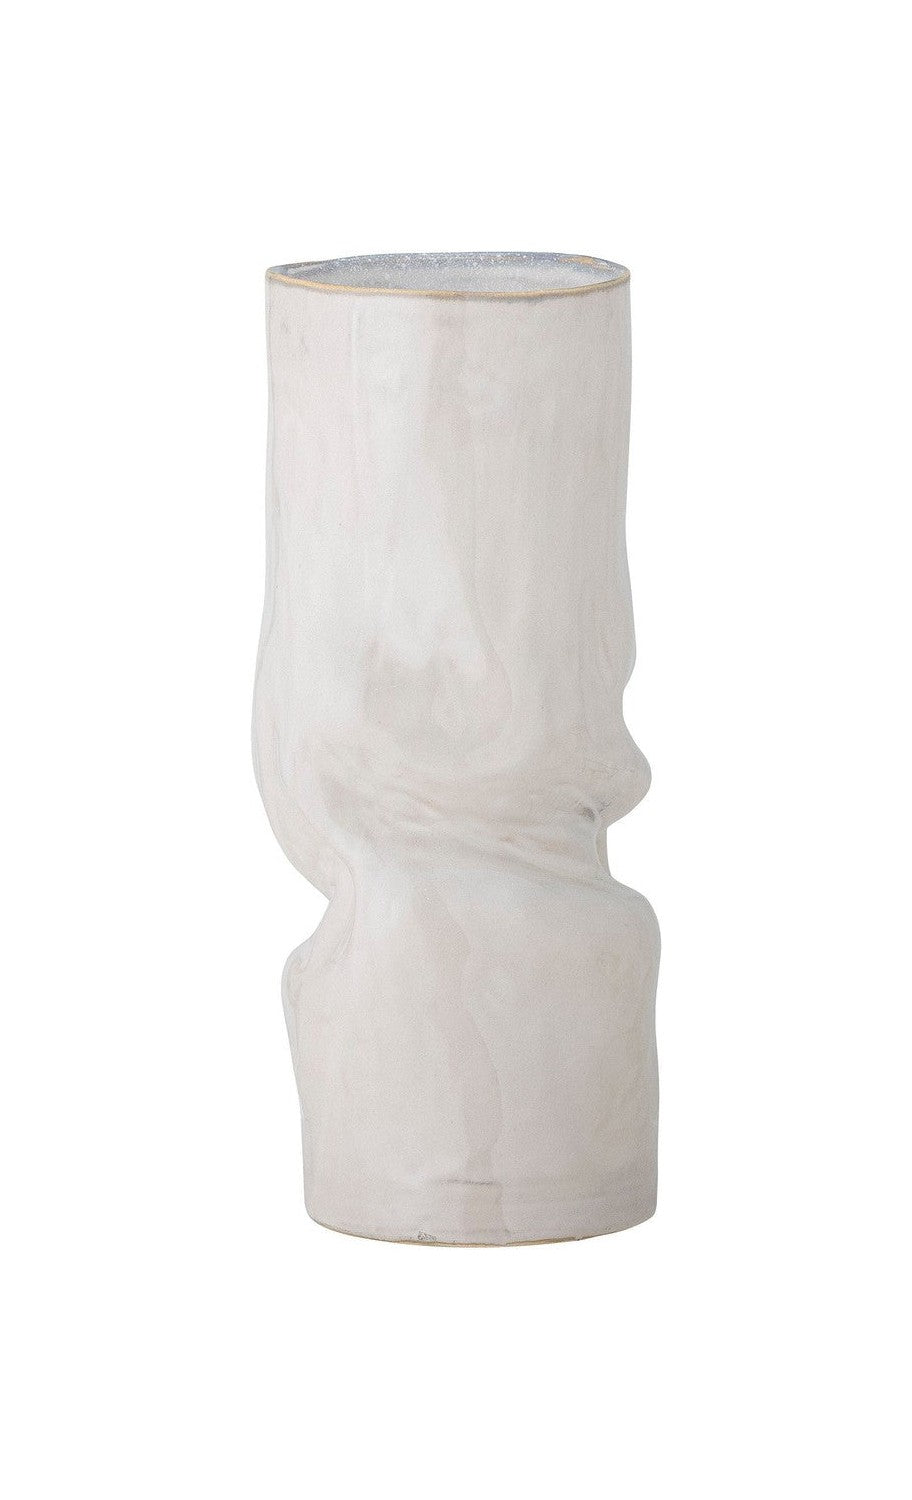 Bloomingville Araba Vase, White, stentøj